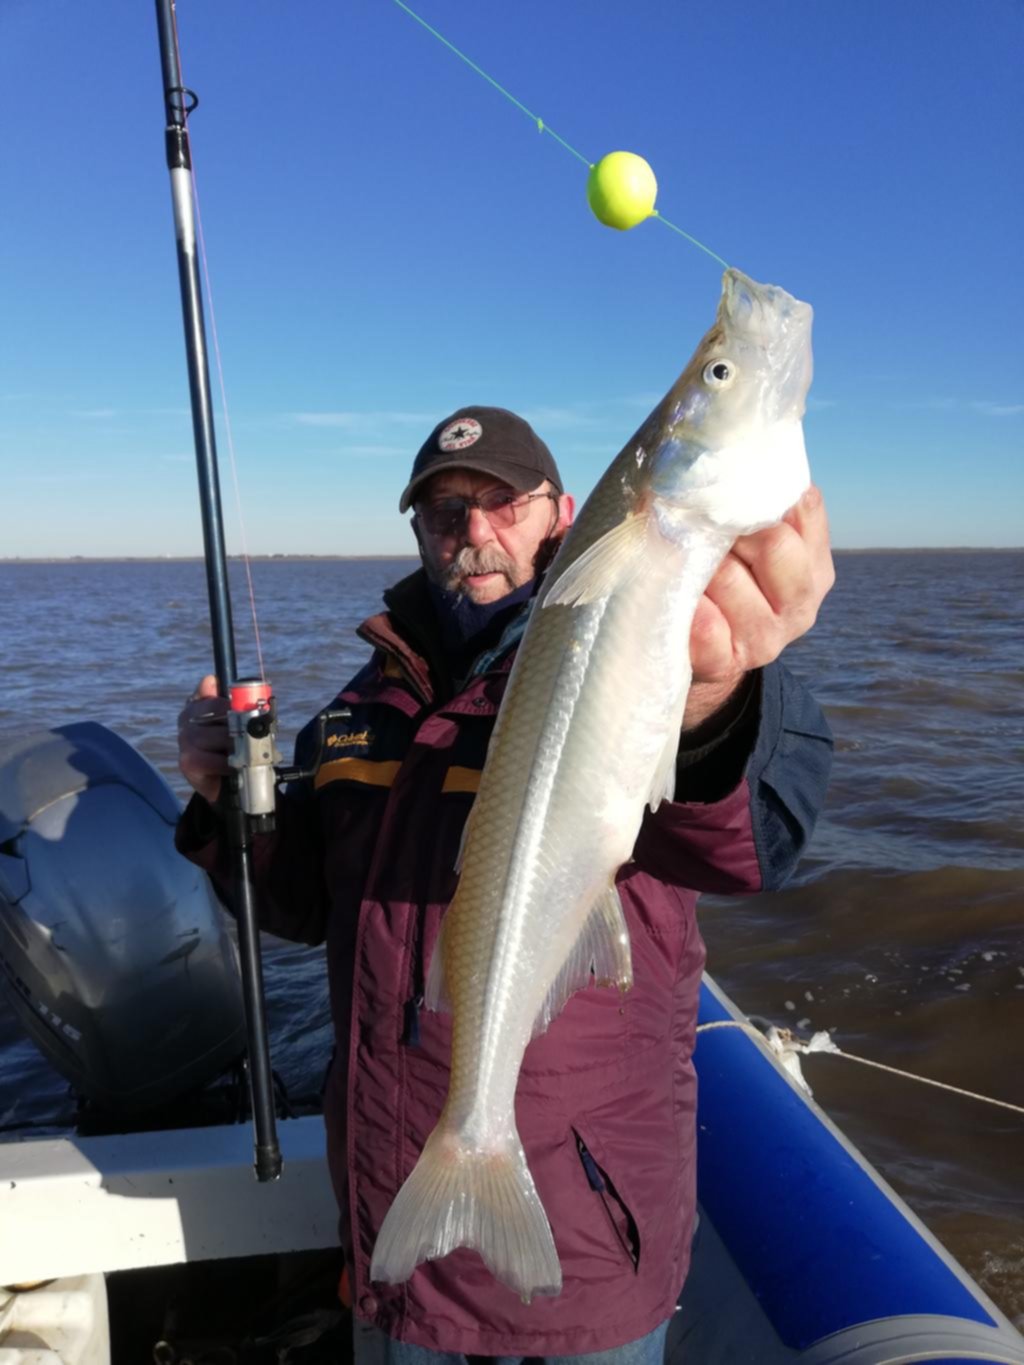 La pesca de grandes matungos es moneda corriente en la zona de “Playa Honda” del Río de la Plata